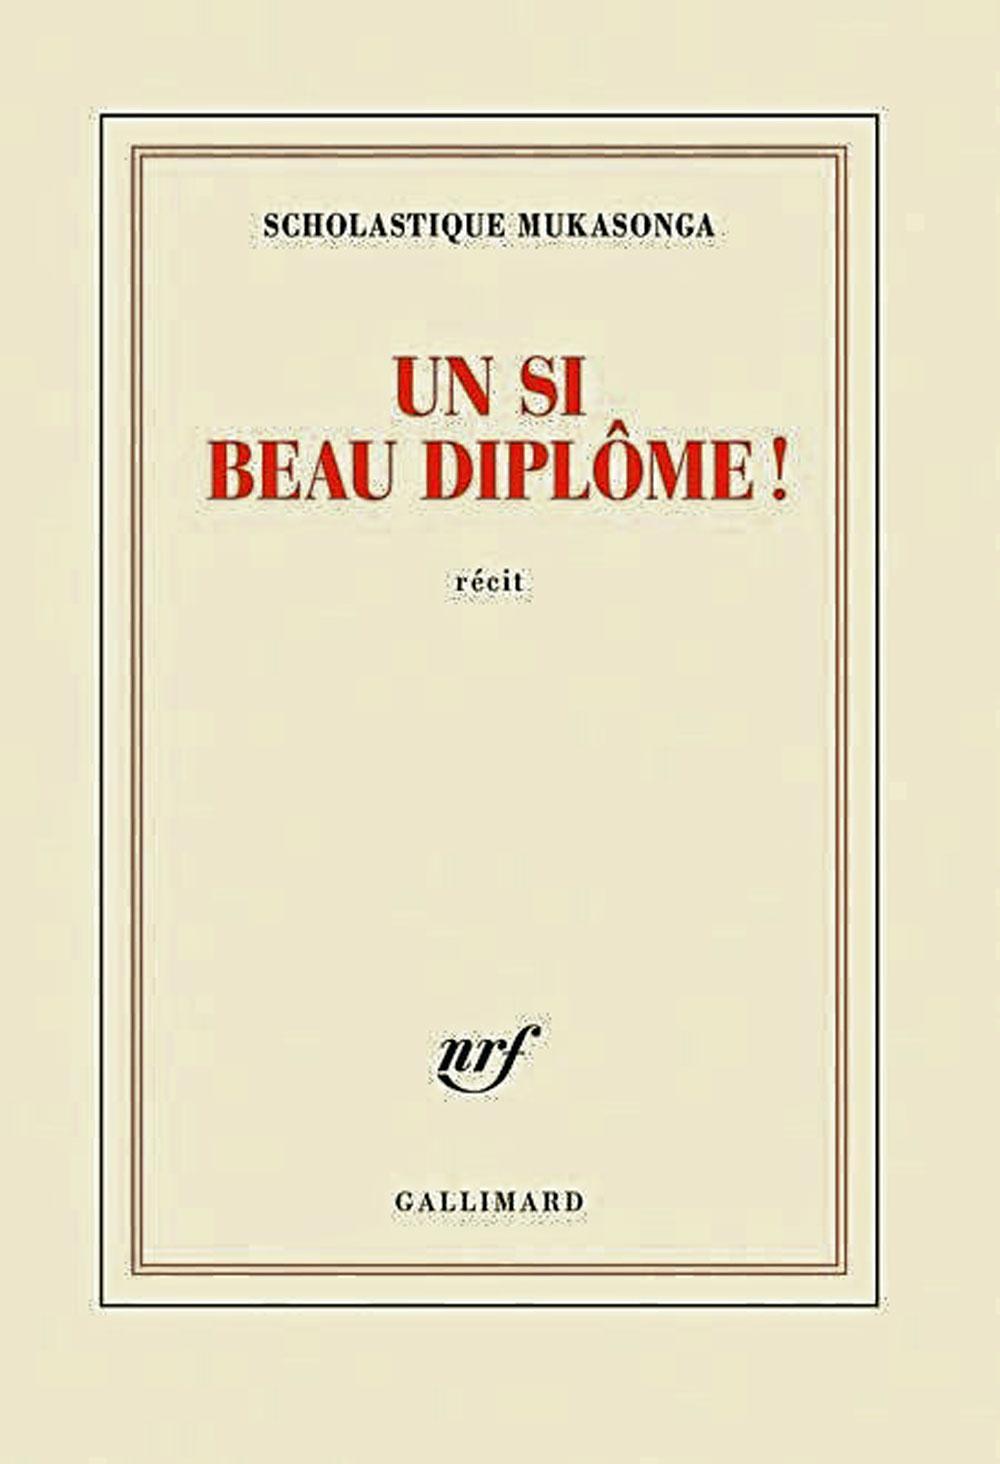 (1) Un si beau diplôme !, Scholastique Mukasonga, Gallimard, 188 p. Scholastique Mukasonga était invitée à Bruxelles par Passa Porta, maison internationale des littératures.